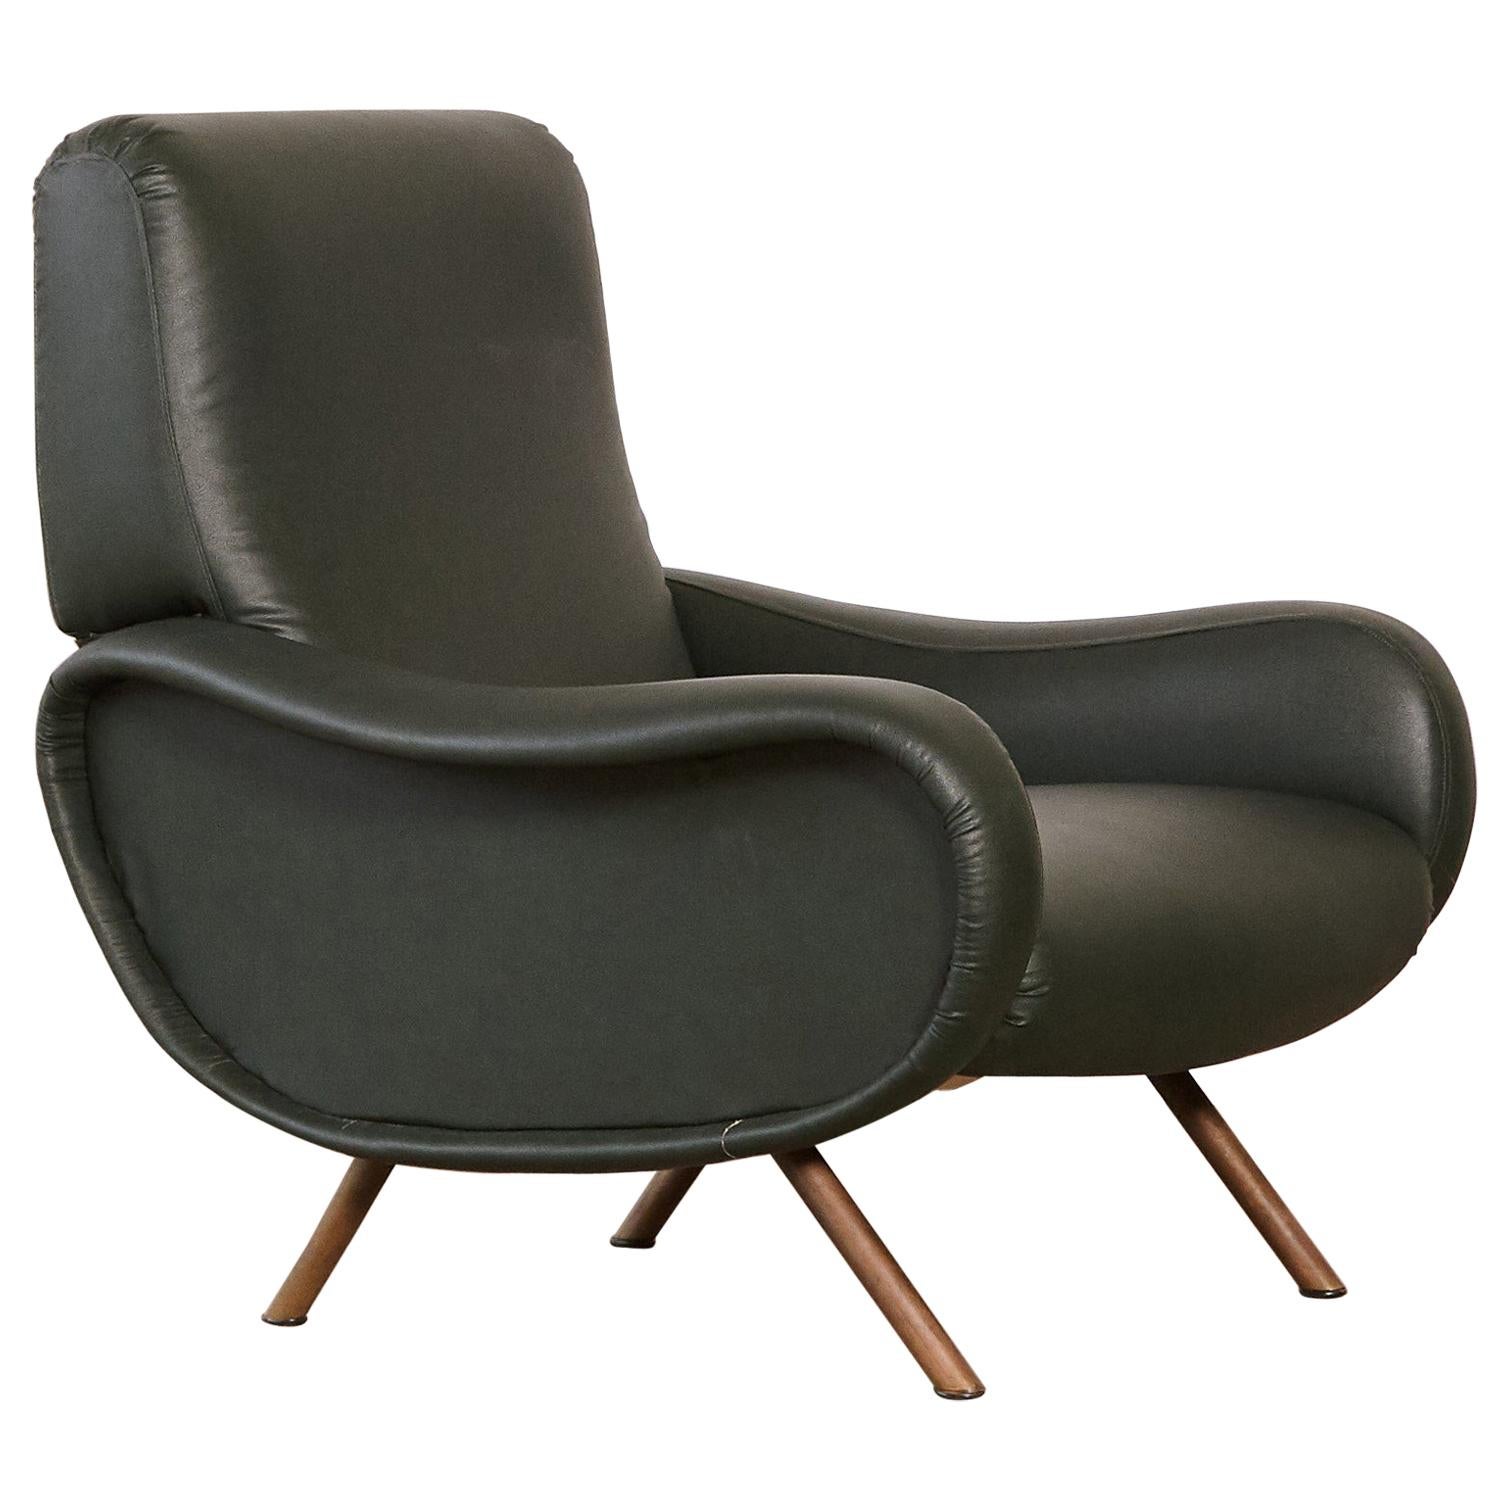 Authentic Marco Zanuso Lady Chair, Arflex, Italy, 1950s-1960s